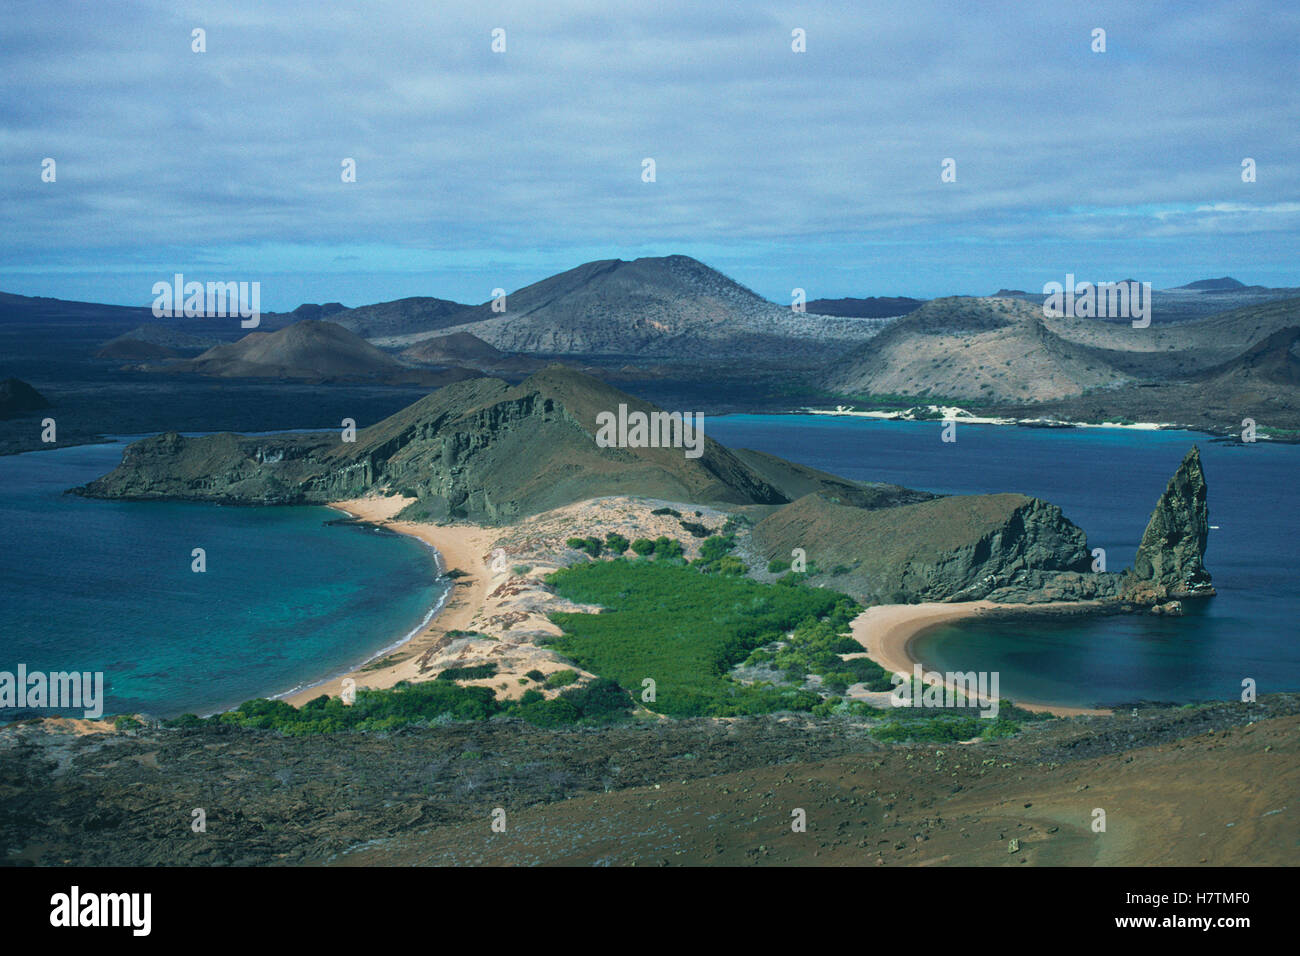 Mirando hacia Bahía Sullivan conos de ceniza en la Isla de Santiago tomadas de Bartolome Isla, Islas Galápagos, Ecuador Foto de stock